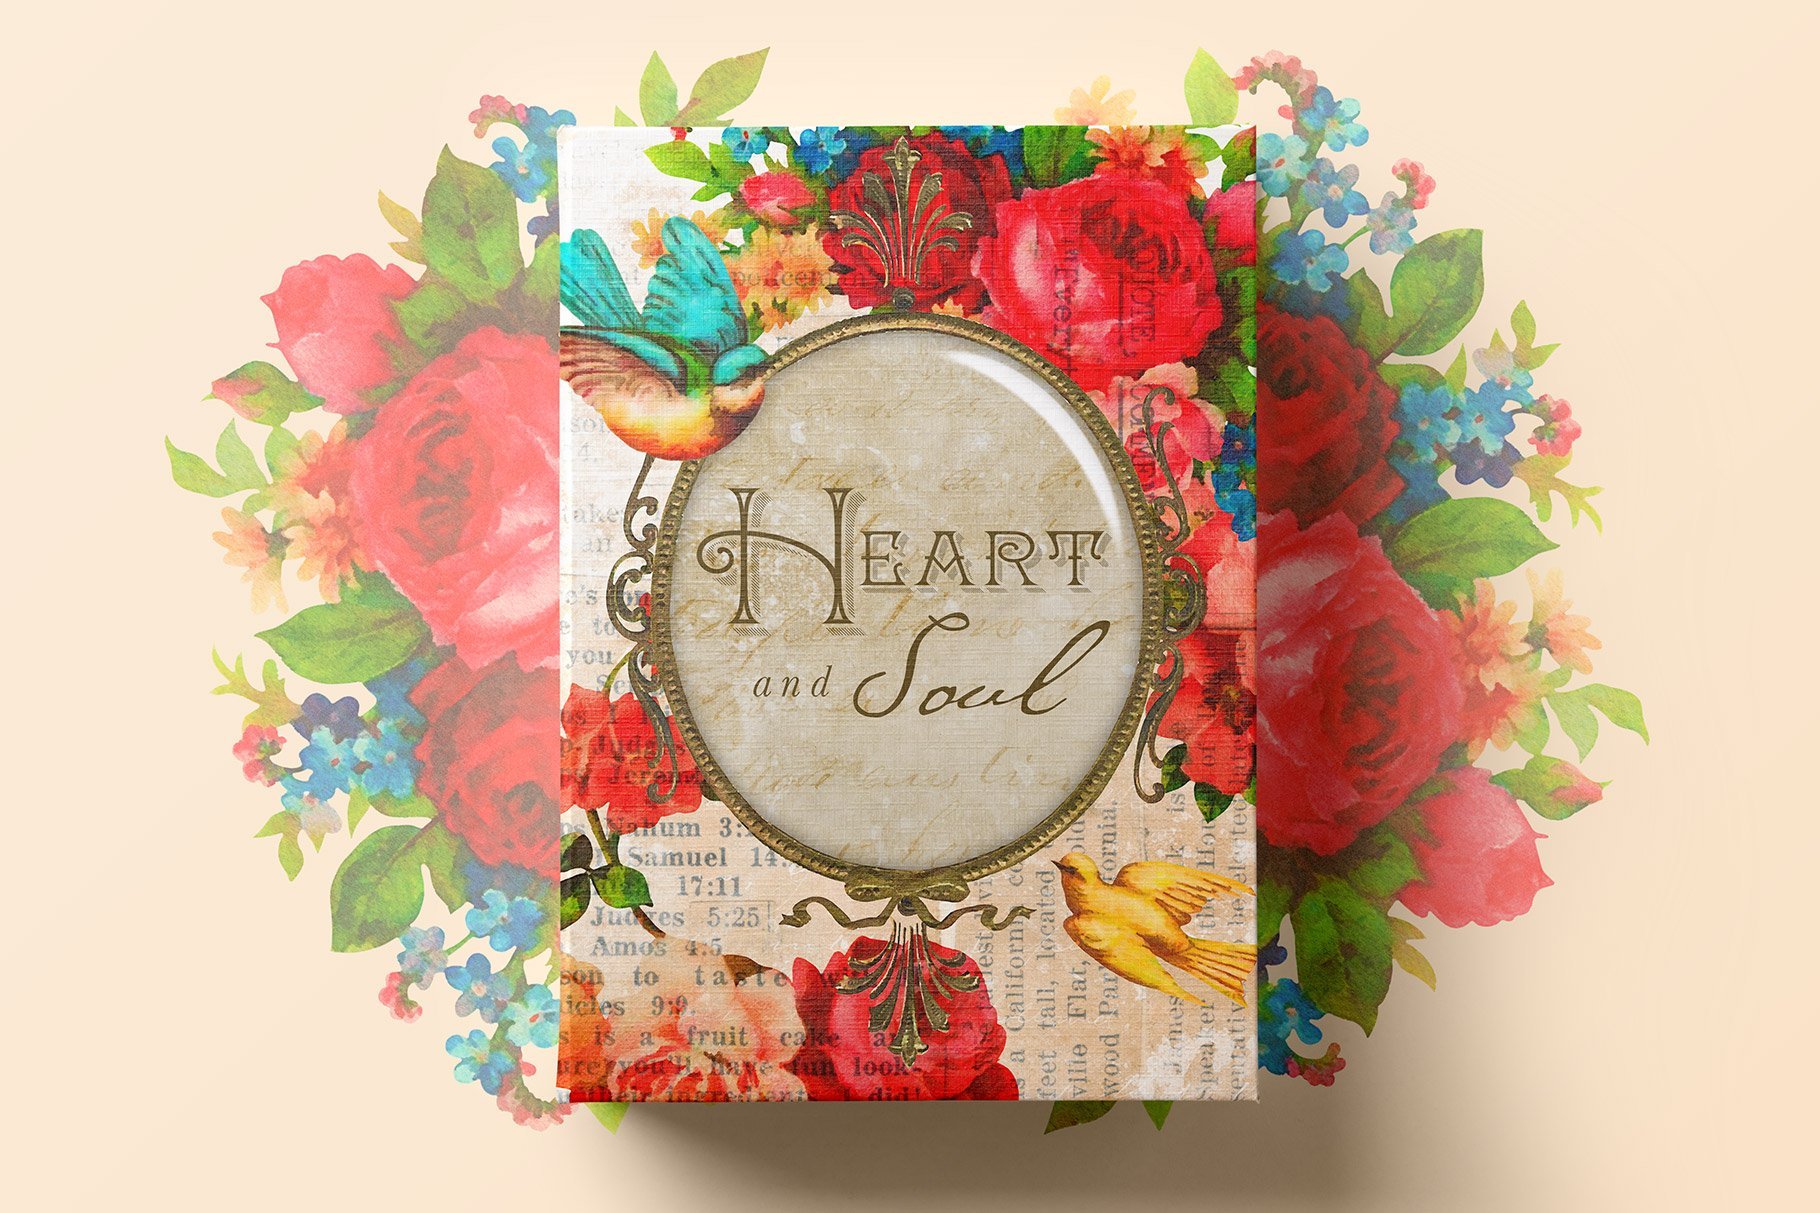 Heart & Soul - Flowers & Frames Kit